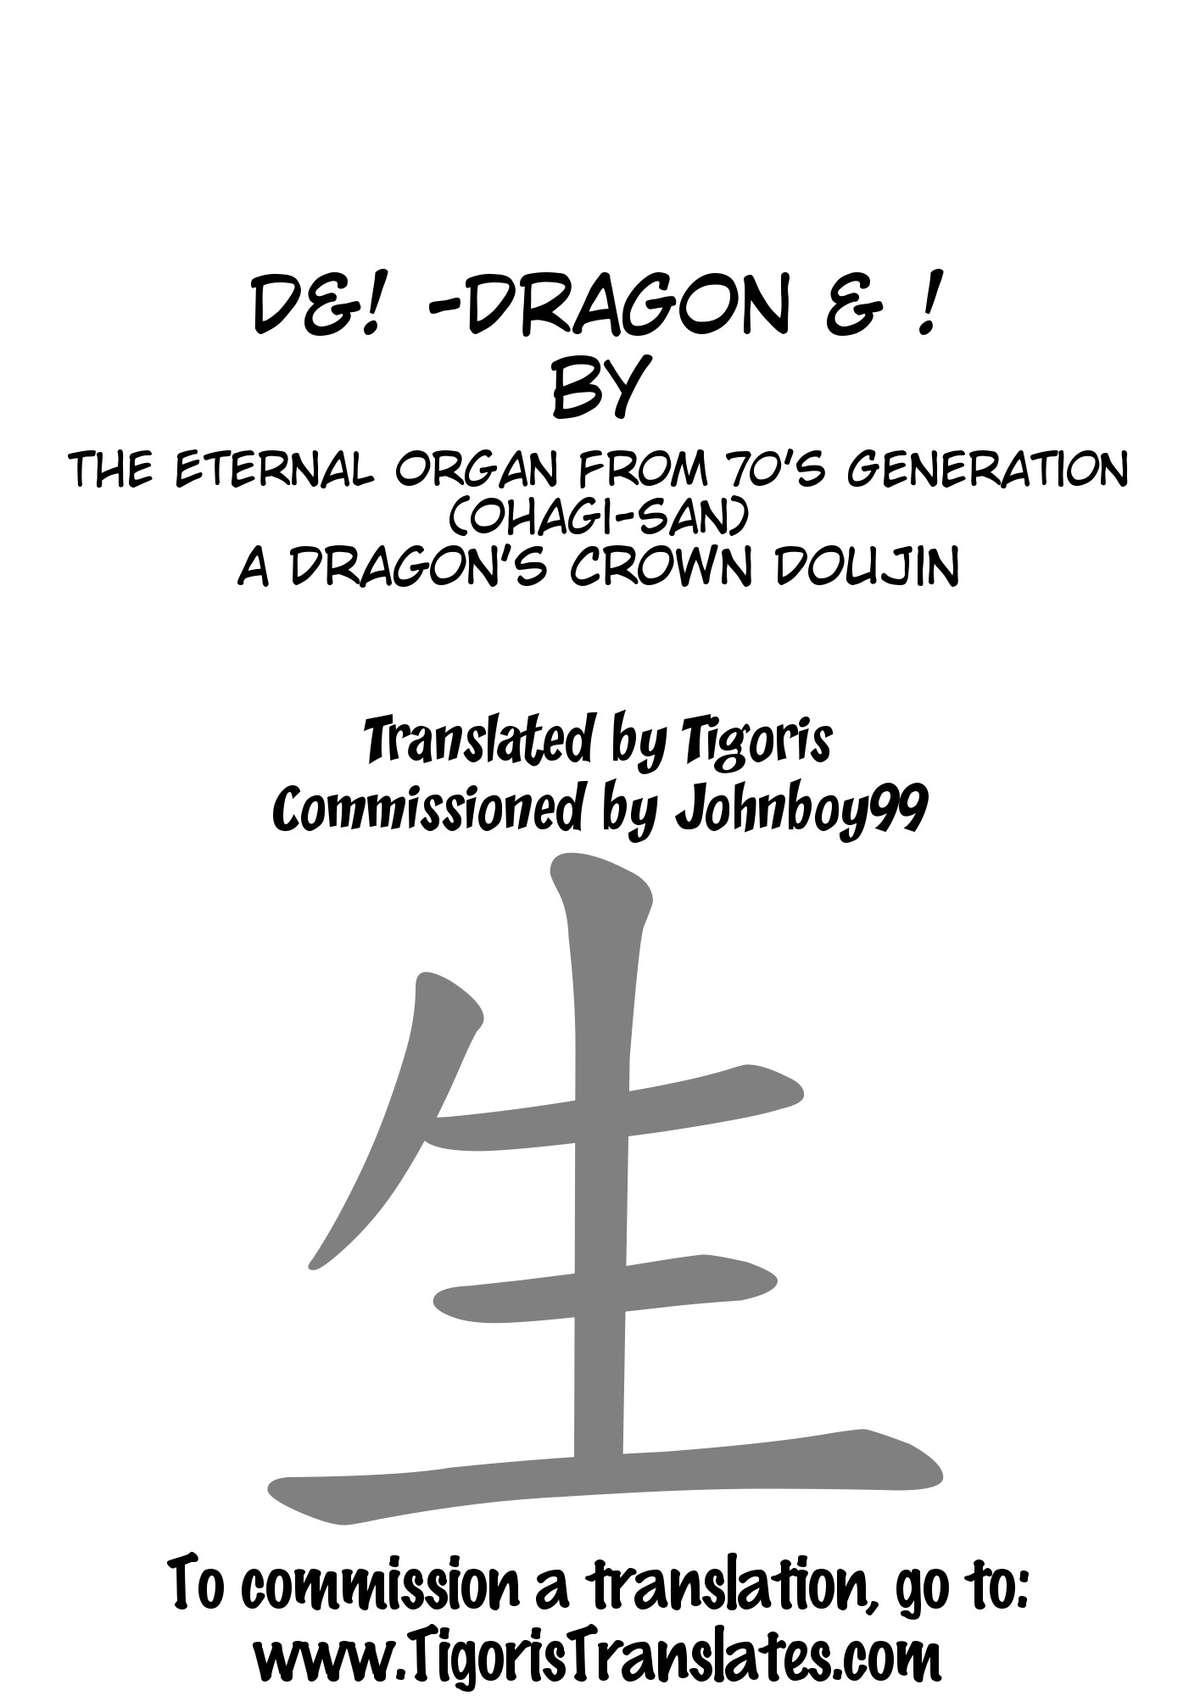 D&! -DRAGON & ! 8